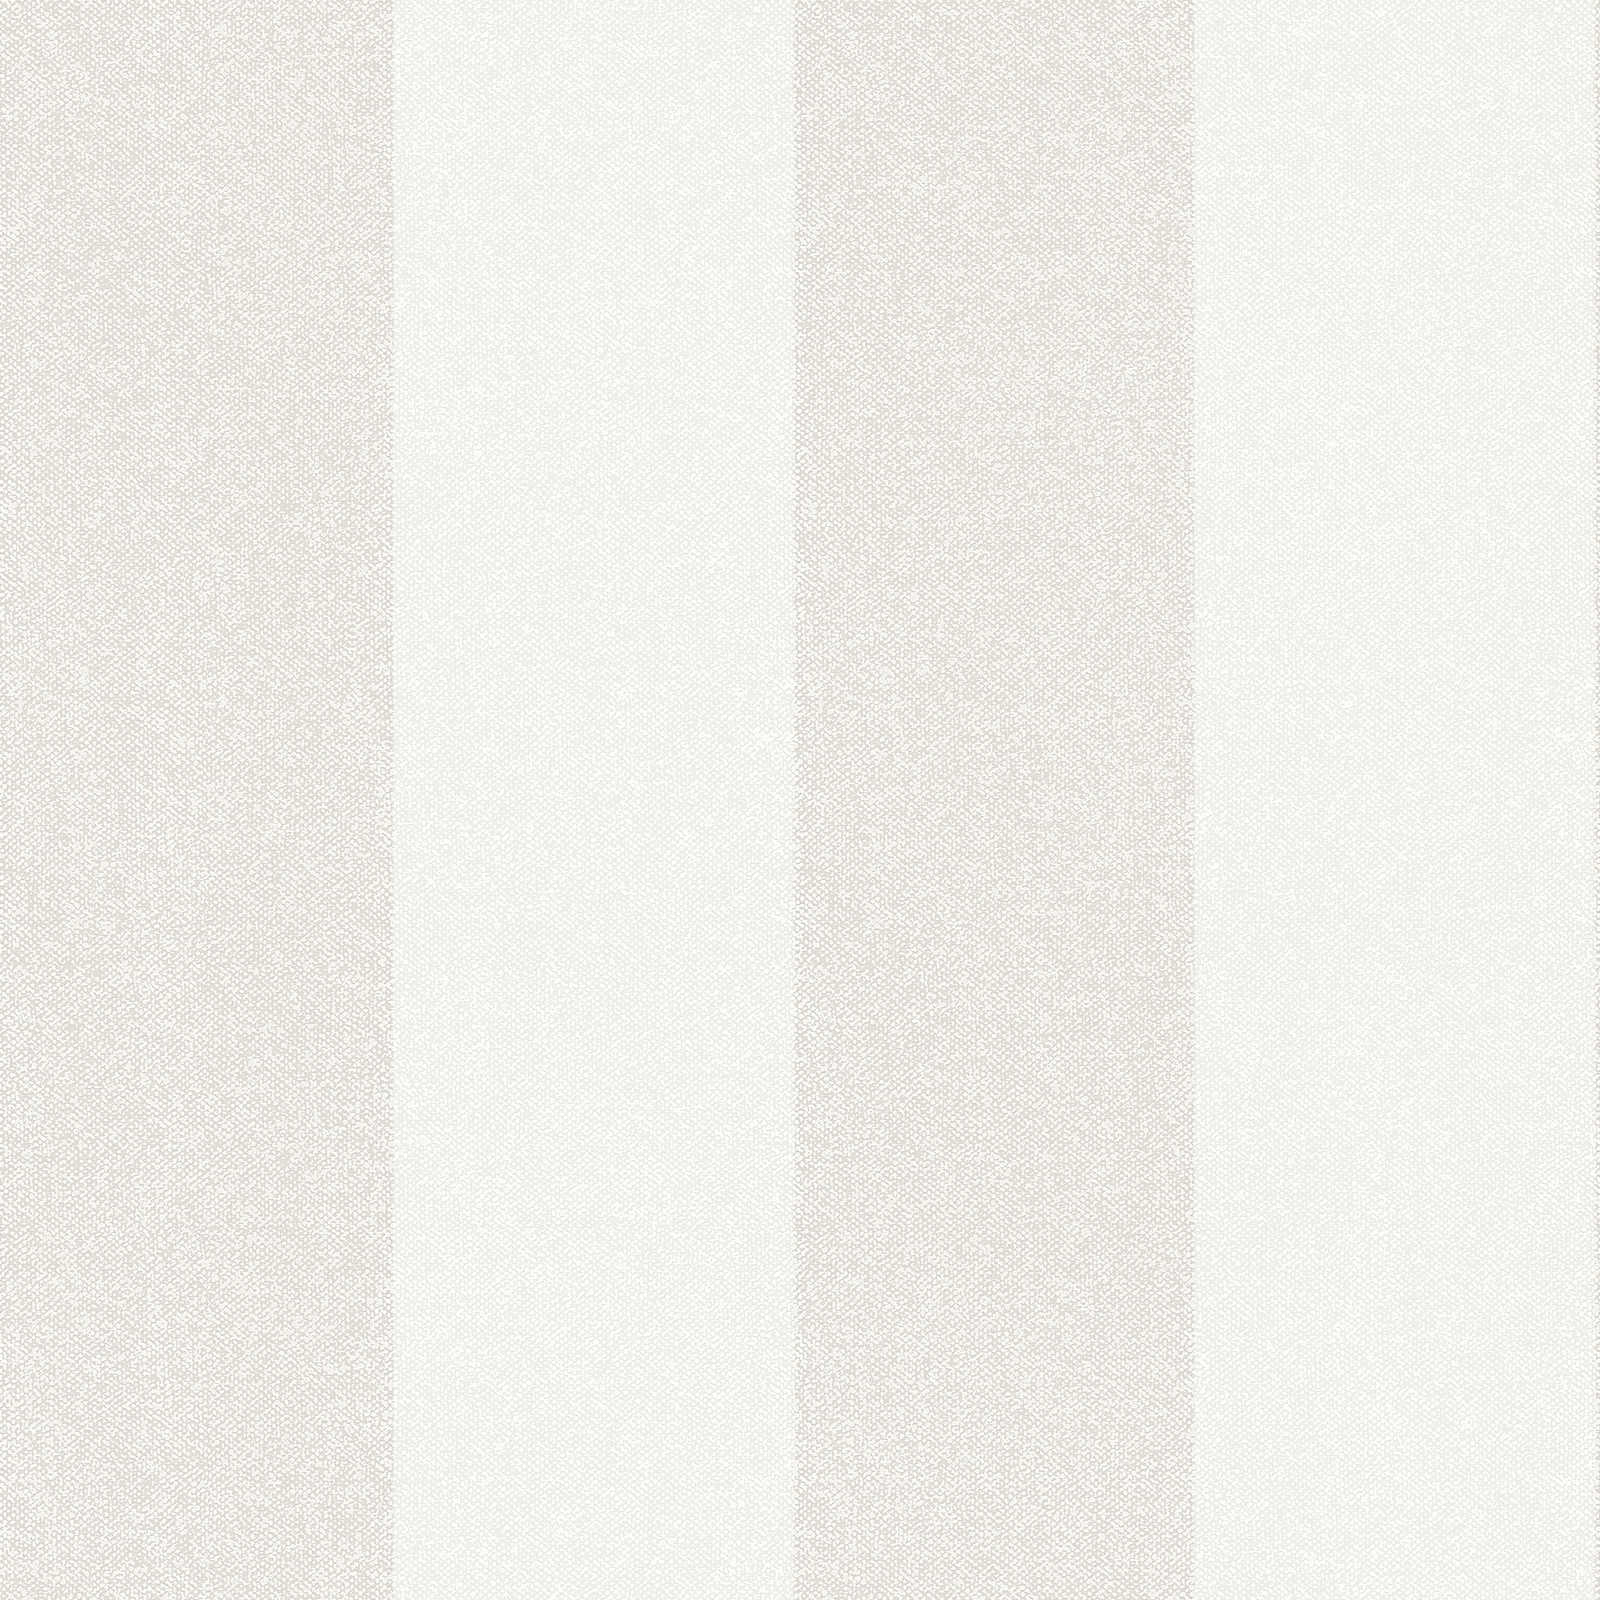 Papier peint à rayures aspect lin - crème, gris, beige
